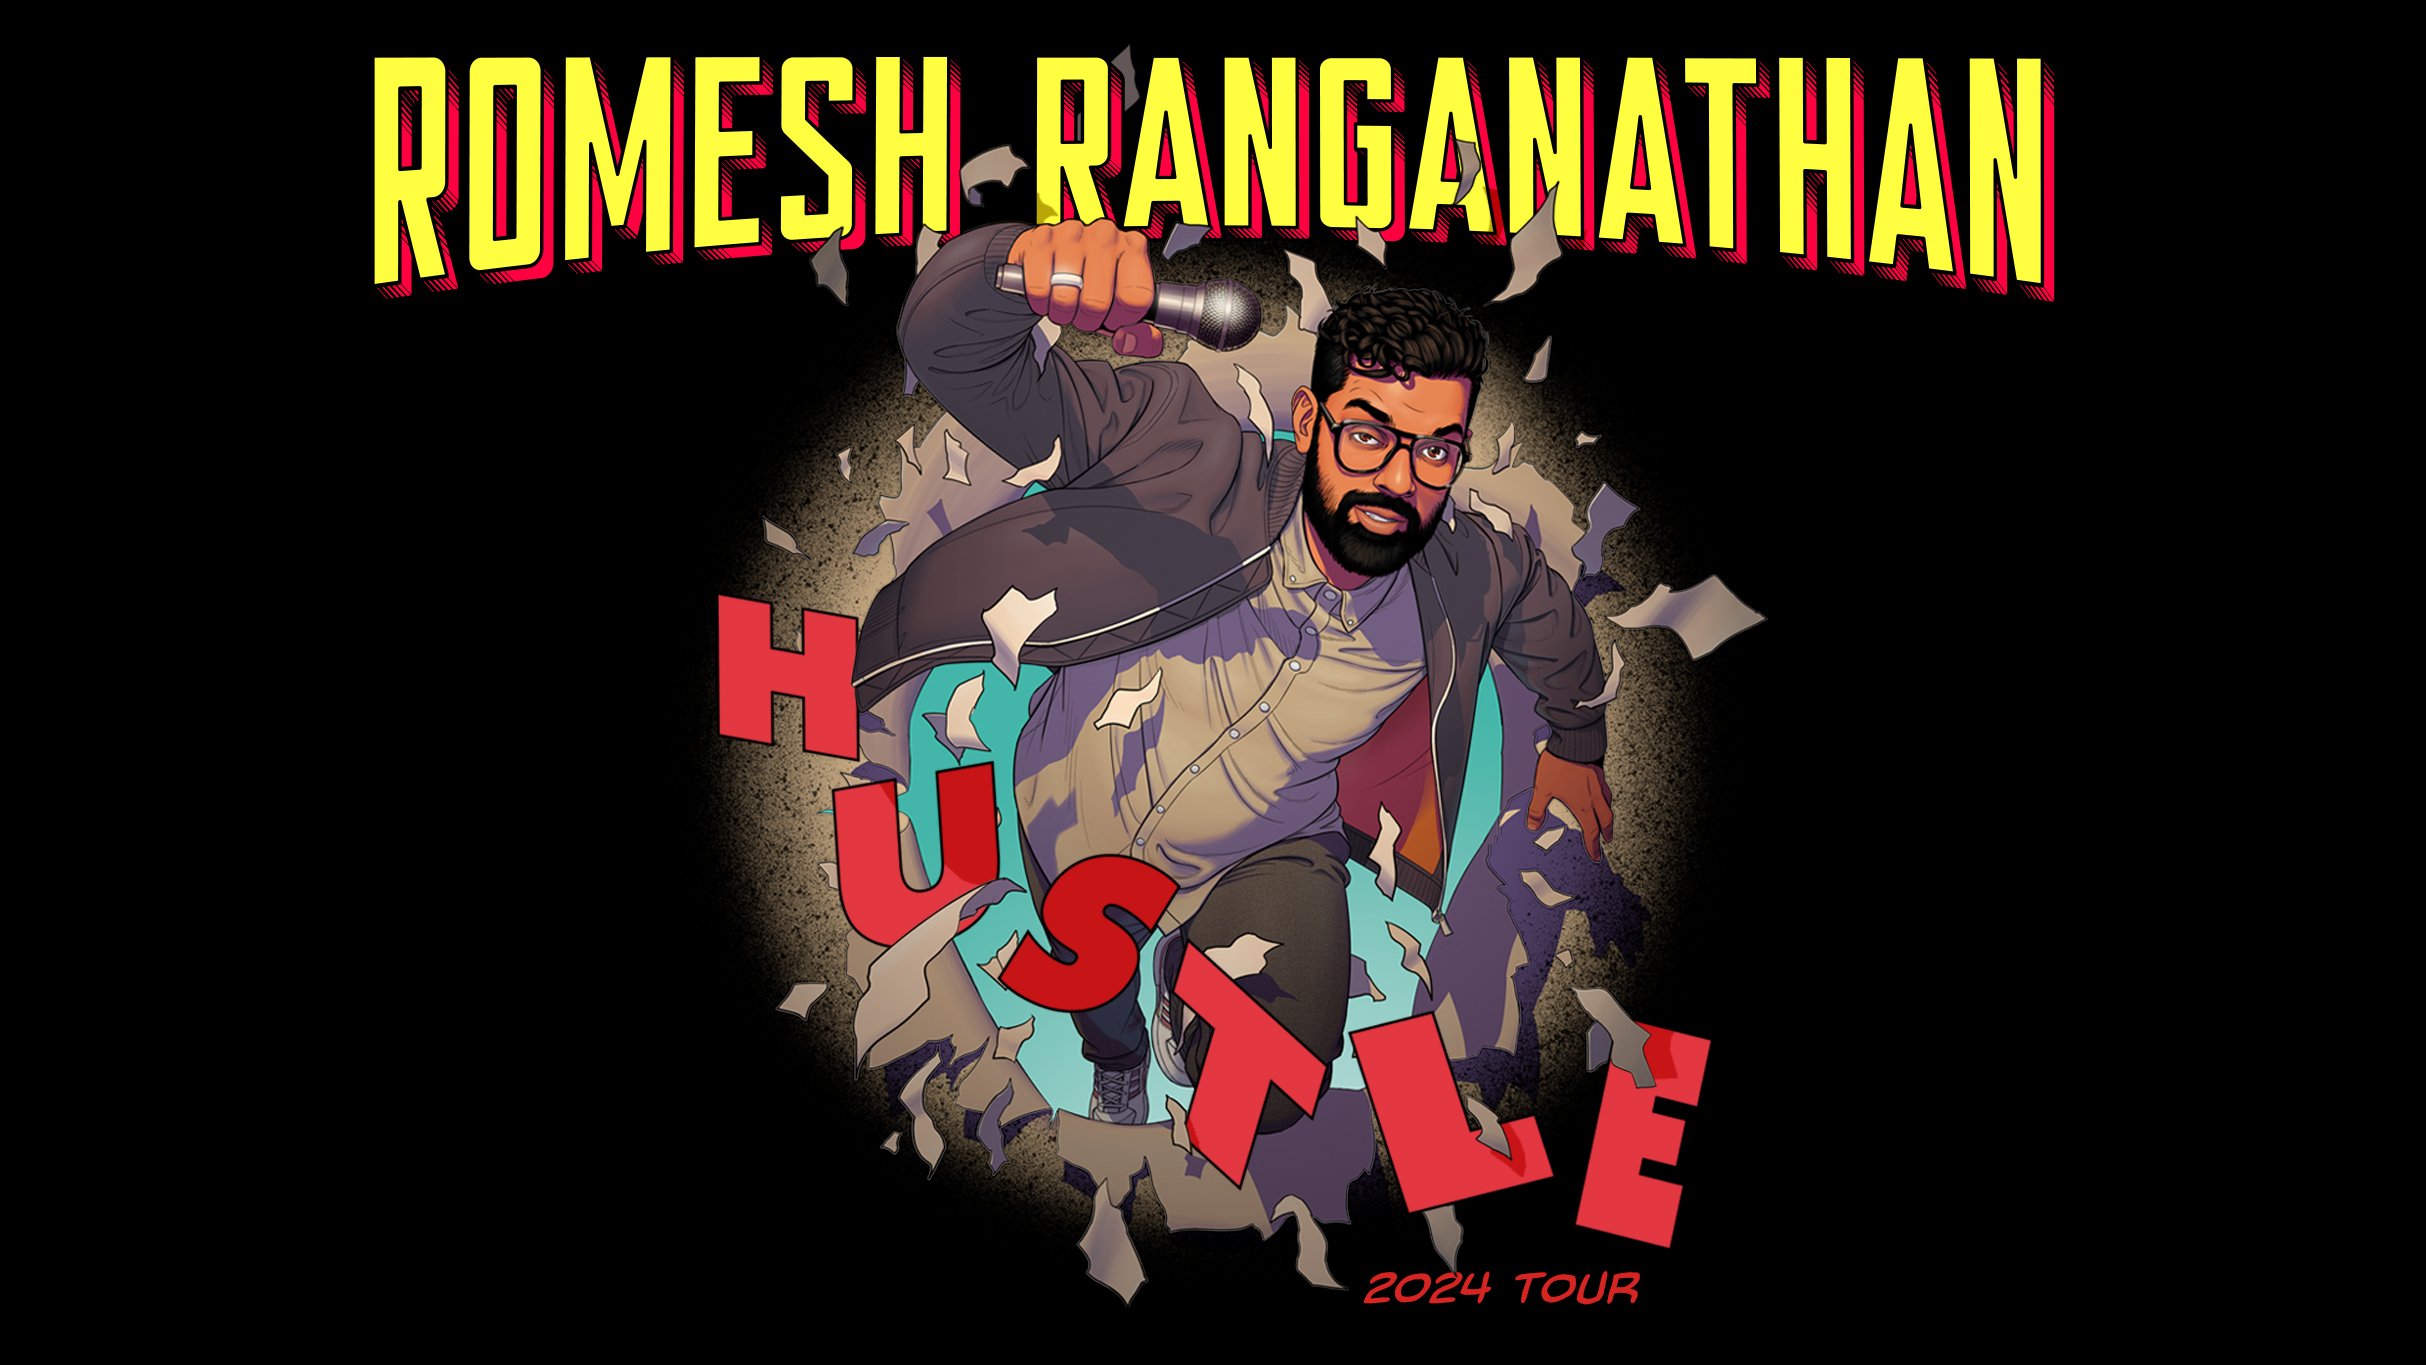 Romesh Ranganathan - The Mixer